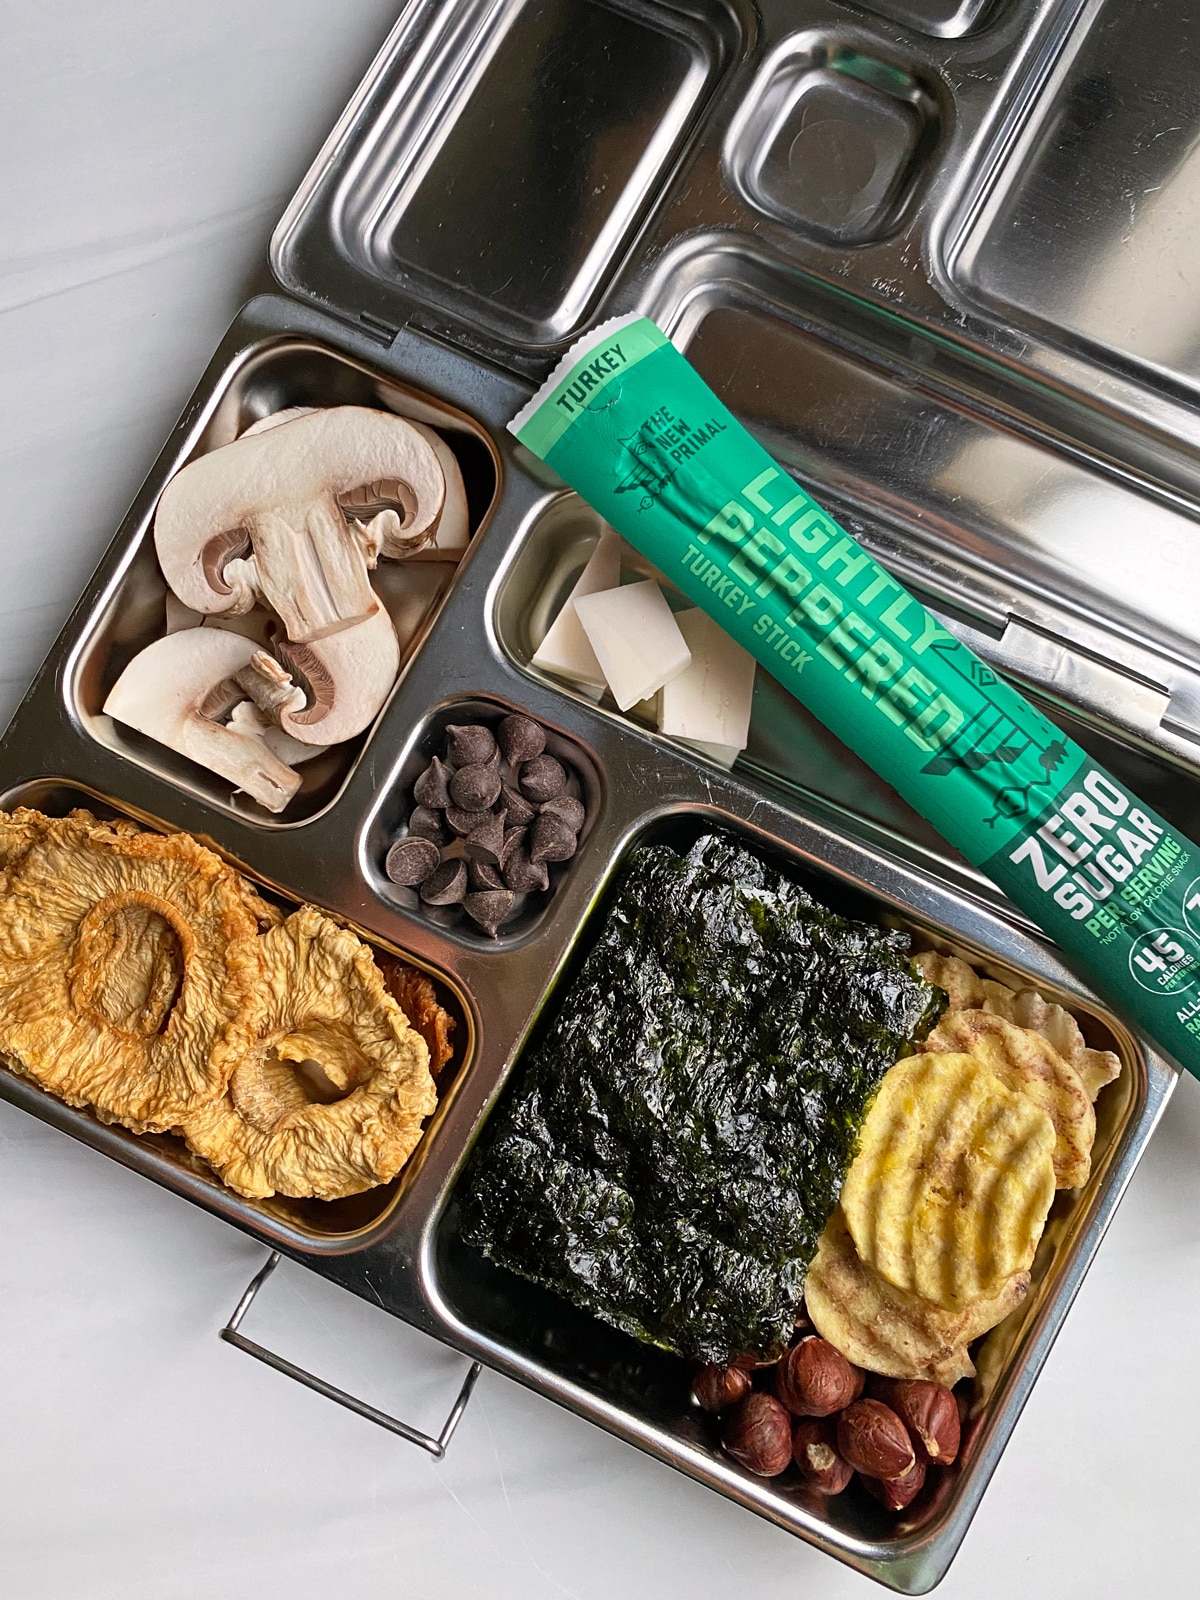 Gluten Free Lunch Box Ideas (Grain Free) - Bake It Paleo